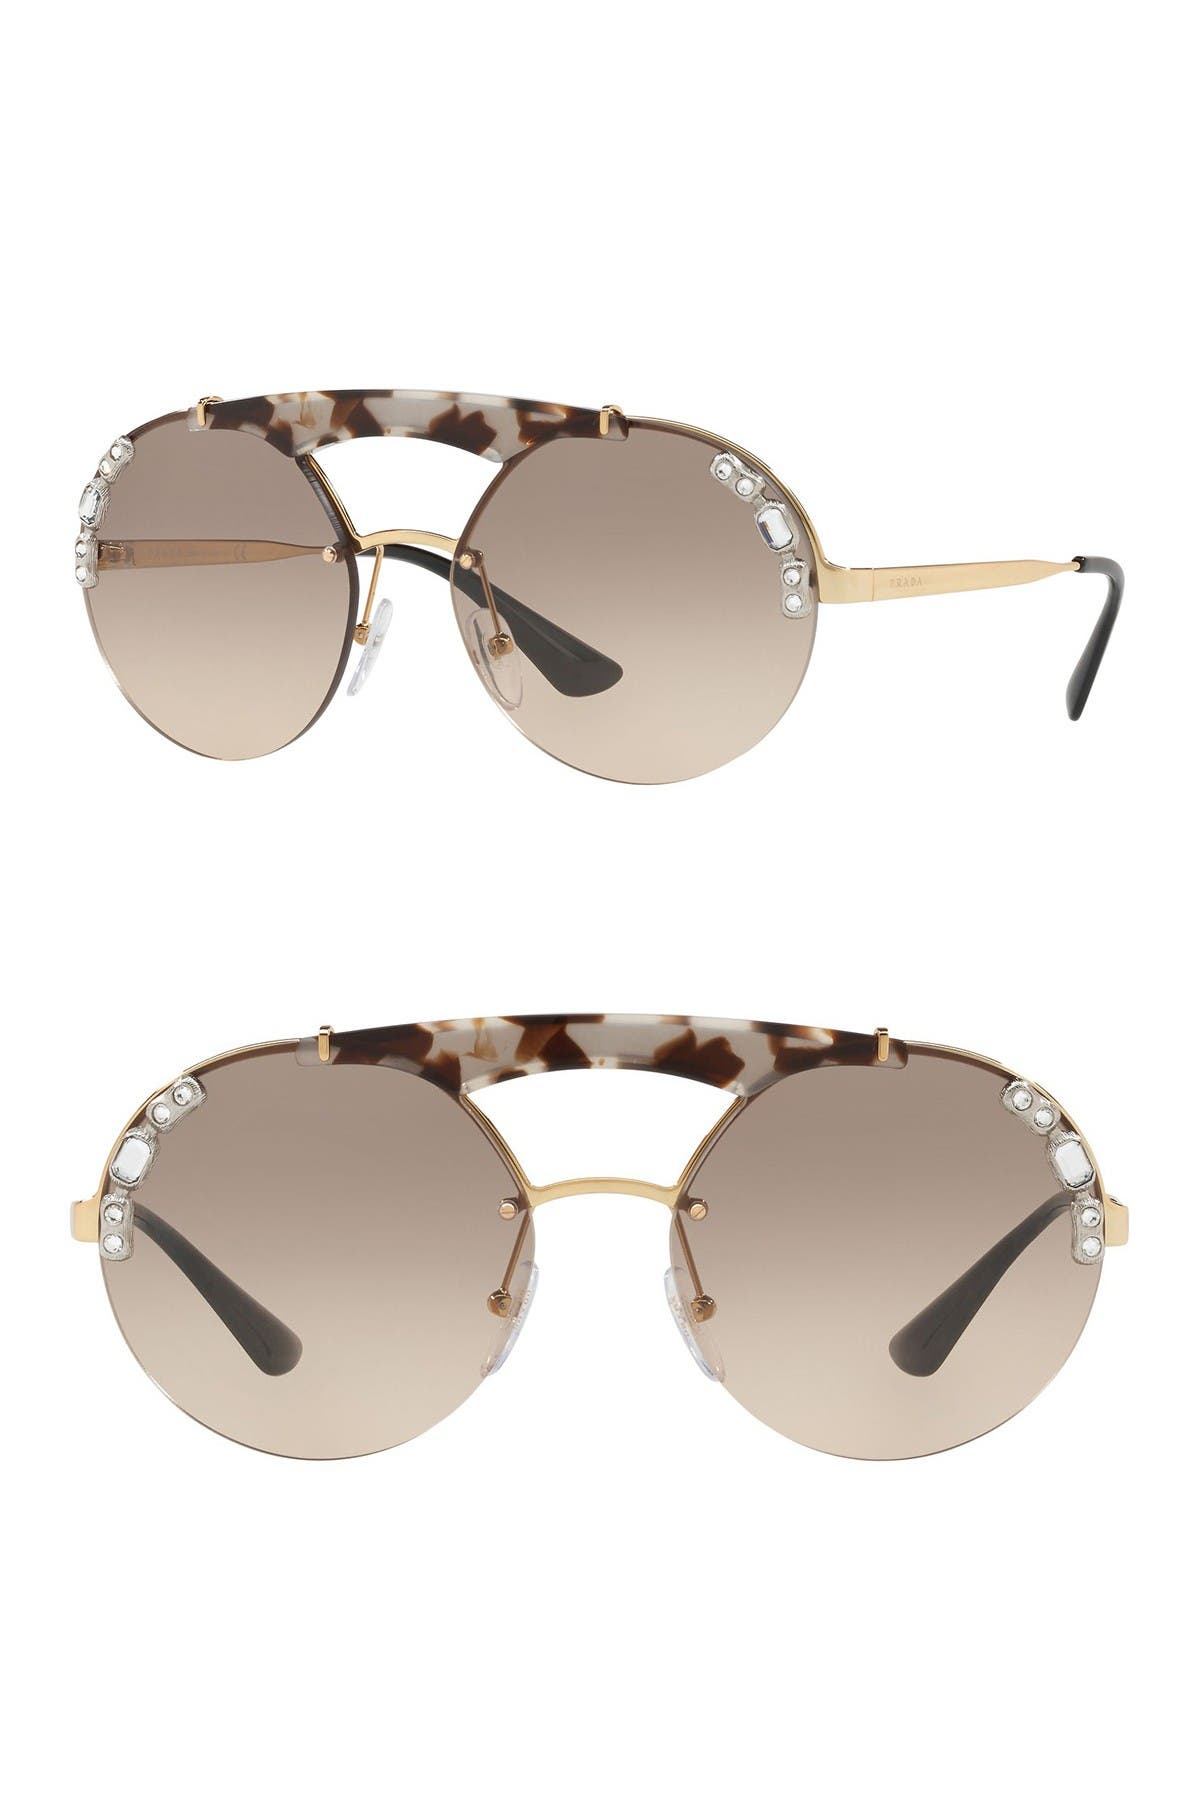 prada women's round 37mm sunglasses